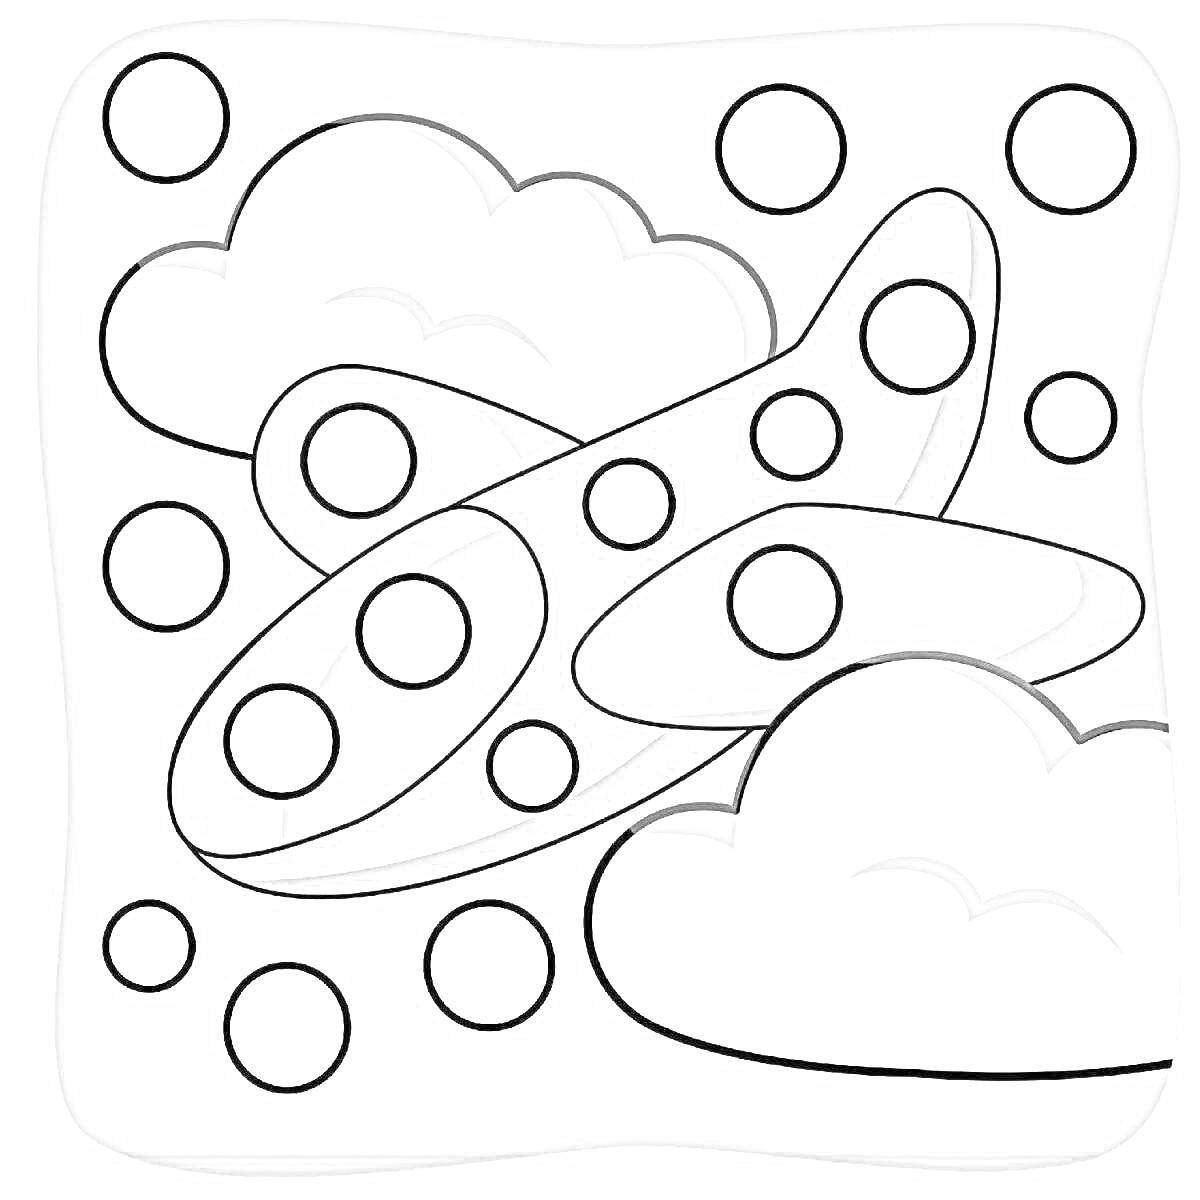 Самолет в облаках с кругами